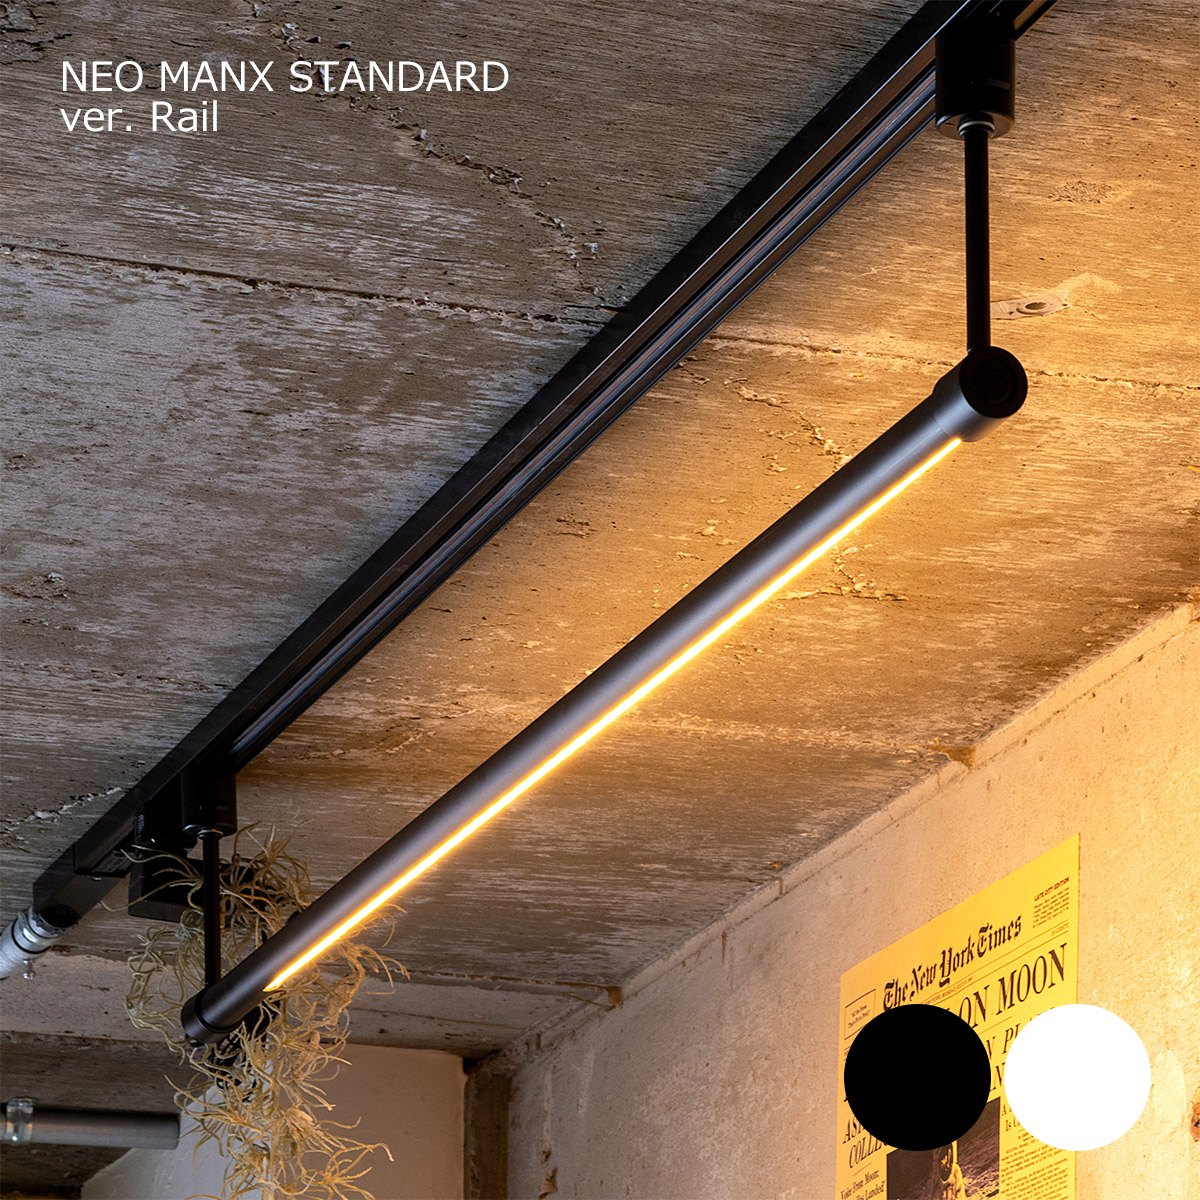 間接照明 おしゃれ 照明 LEDバーライト ネオマンクス ダクトレール用 リモコン付き ダクトマウントセット スマホアプリ対応 調光 調色  NEOMANX